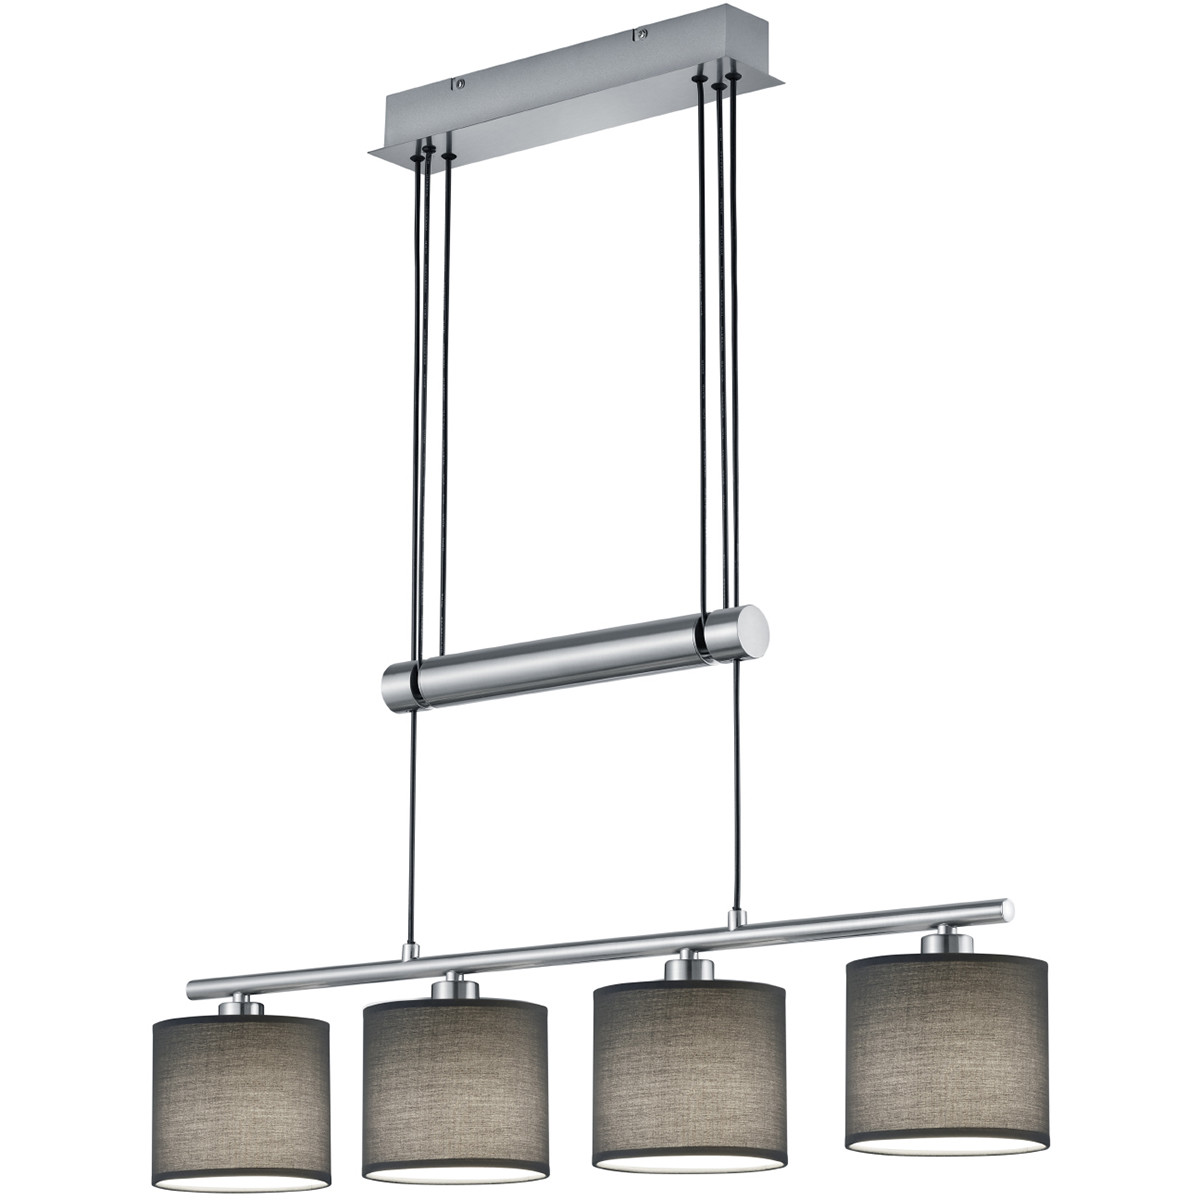 LED Hanglamp Trion Gorino E14 Fitting 4-lichts Rechthoek Mat Grijs Aluminium